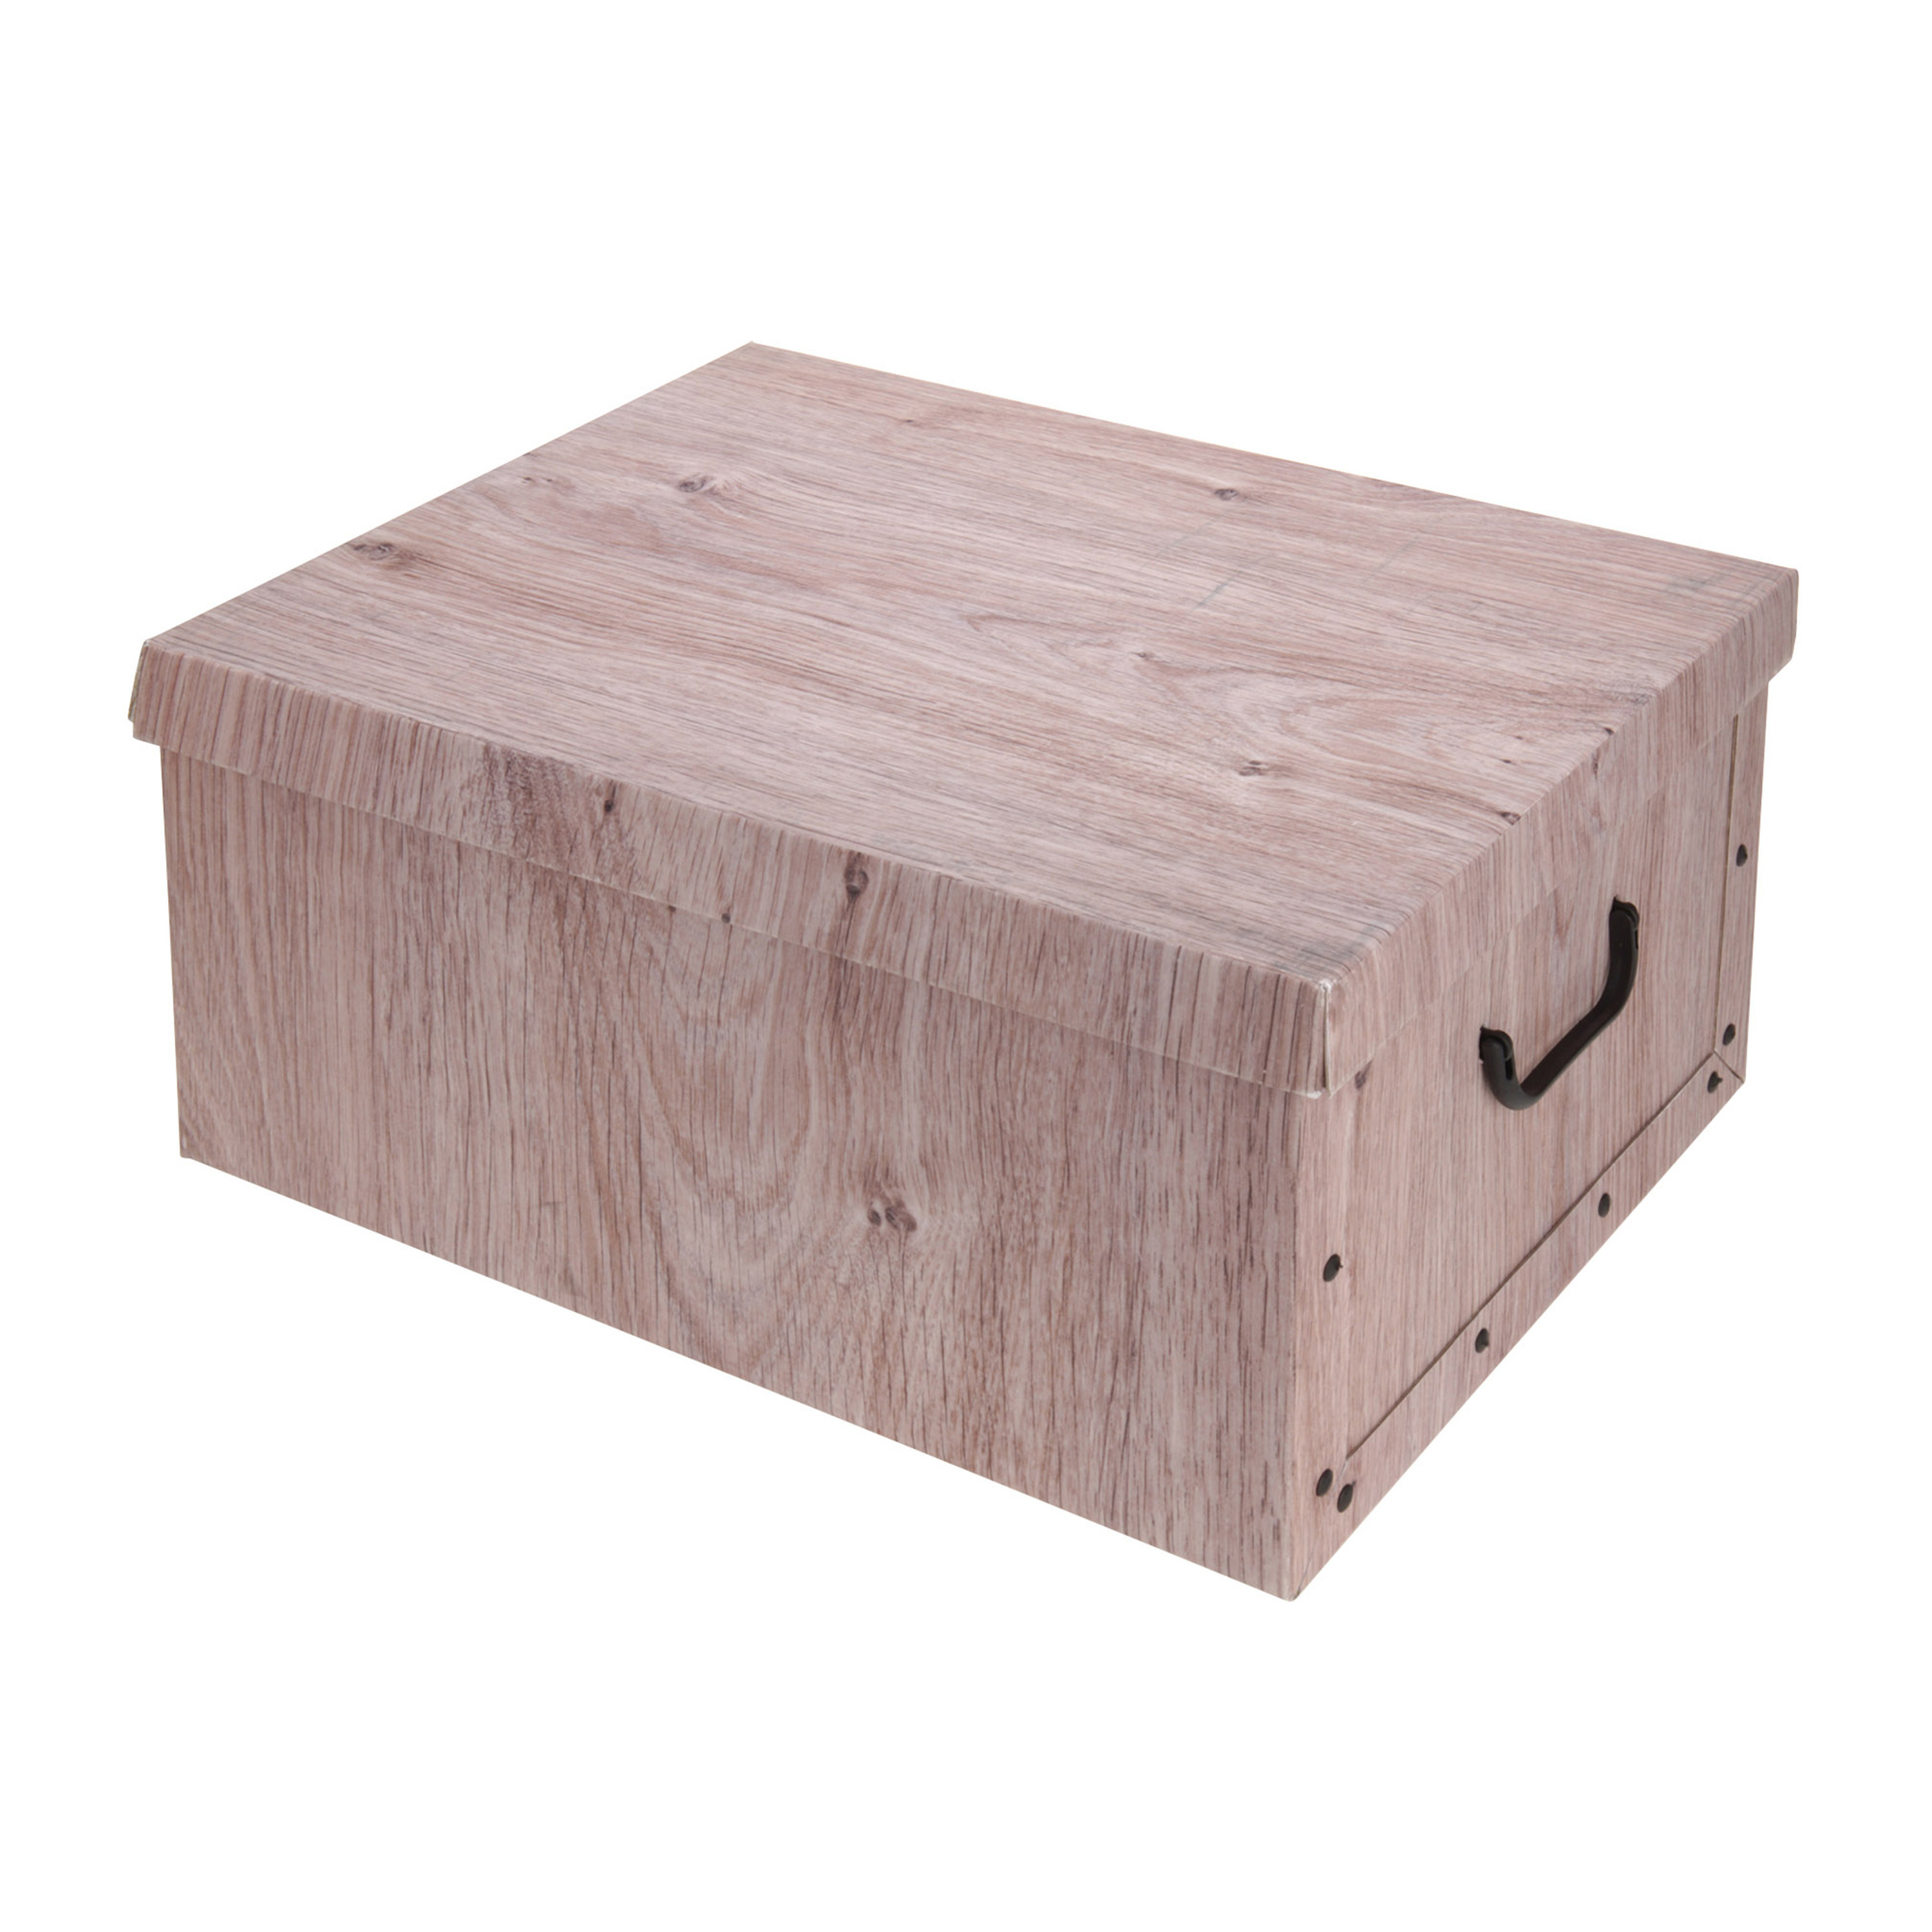 Opbergdoos-opberg box van karton met hout print bruin 37 x 30 x 16 cm